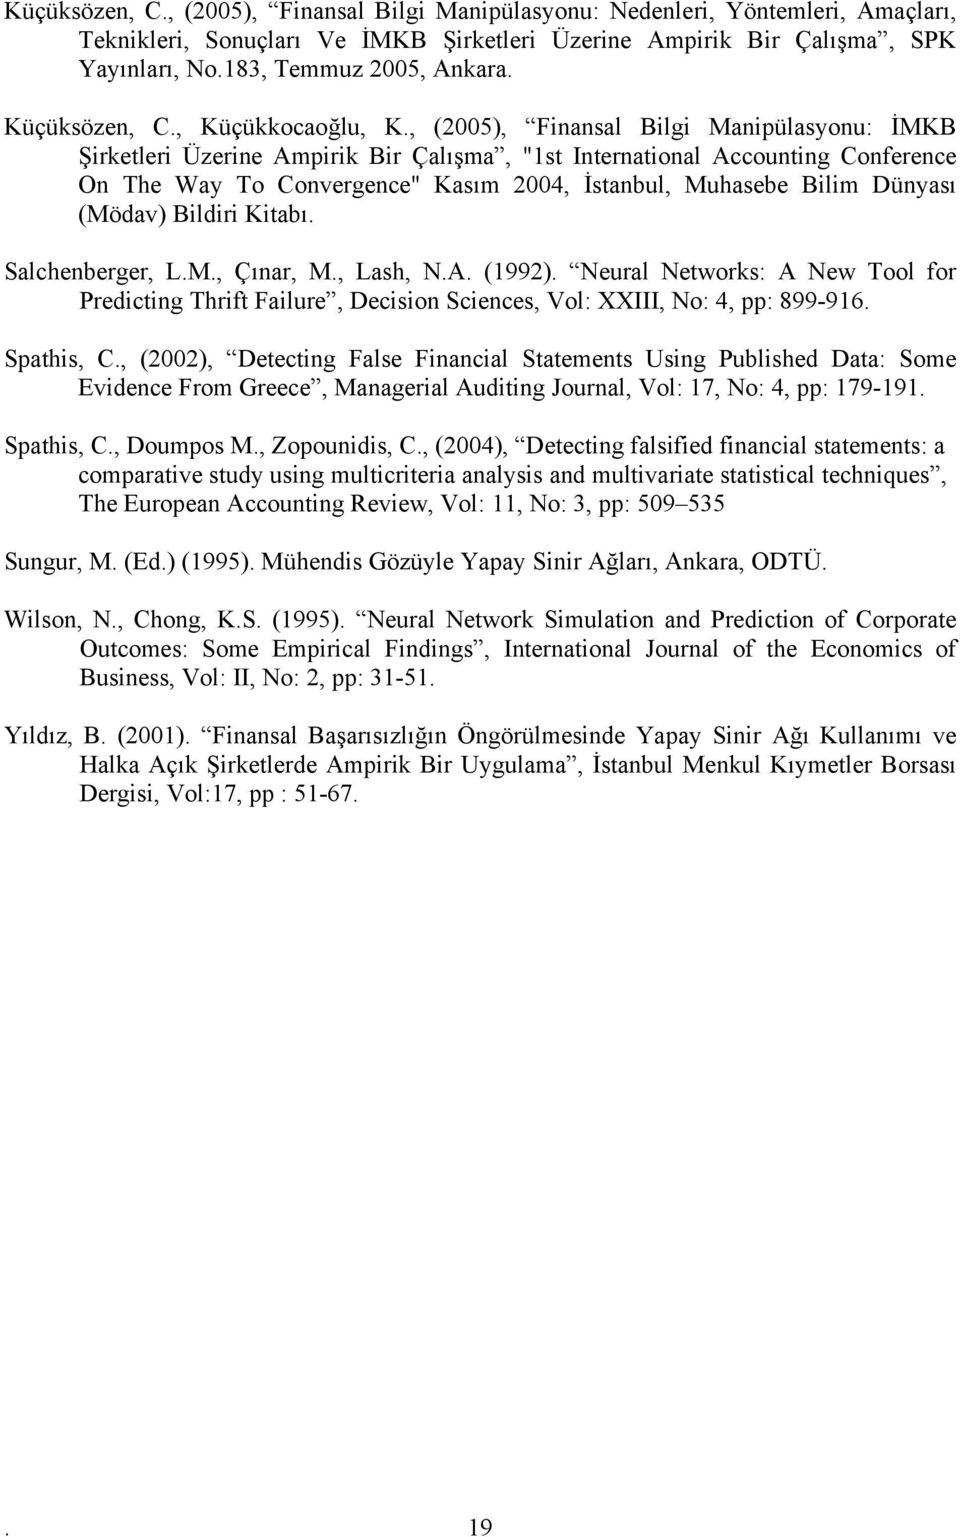 , (2005), Finansal Bilgi Manipülasyonu: İMKB Şirkeleri Üzerine Ampirik Bir Çalışma, "1s Inernaional Accouning Conference On The Way To Convergence" Kasım 2004, İsanbul, Muhasebe Bilim Dünyası (Mödav)